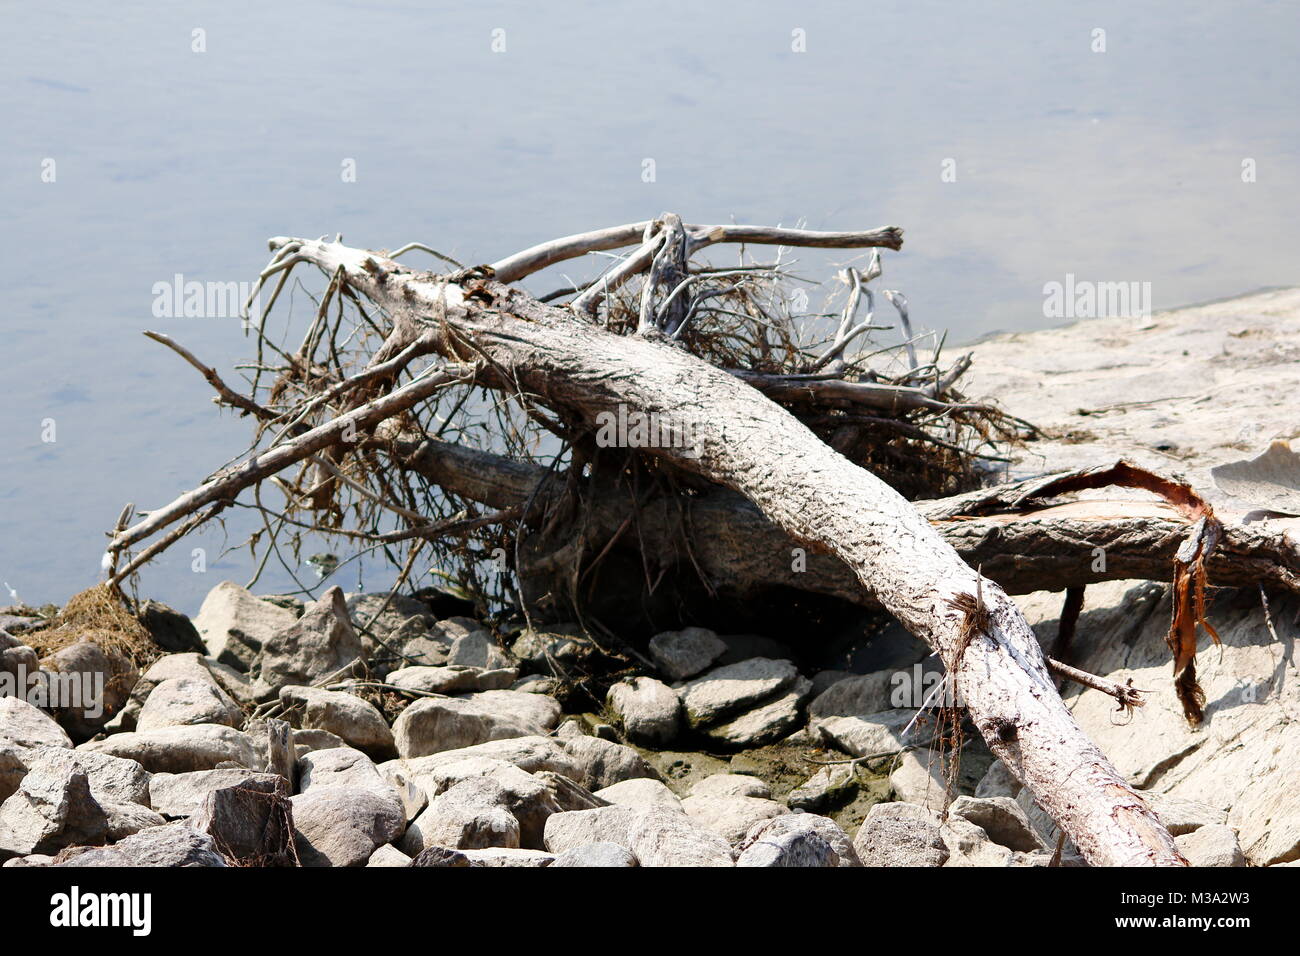 Alter vertrockneter Baumstamm, angeschwemmt am Ufer des Sees, Strandgut Stock Photo